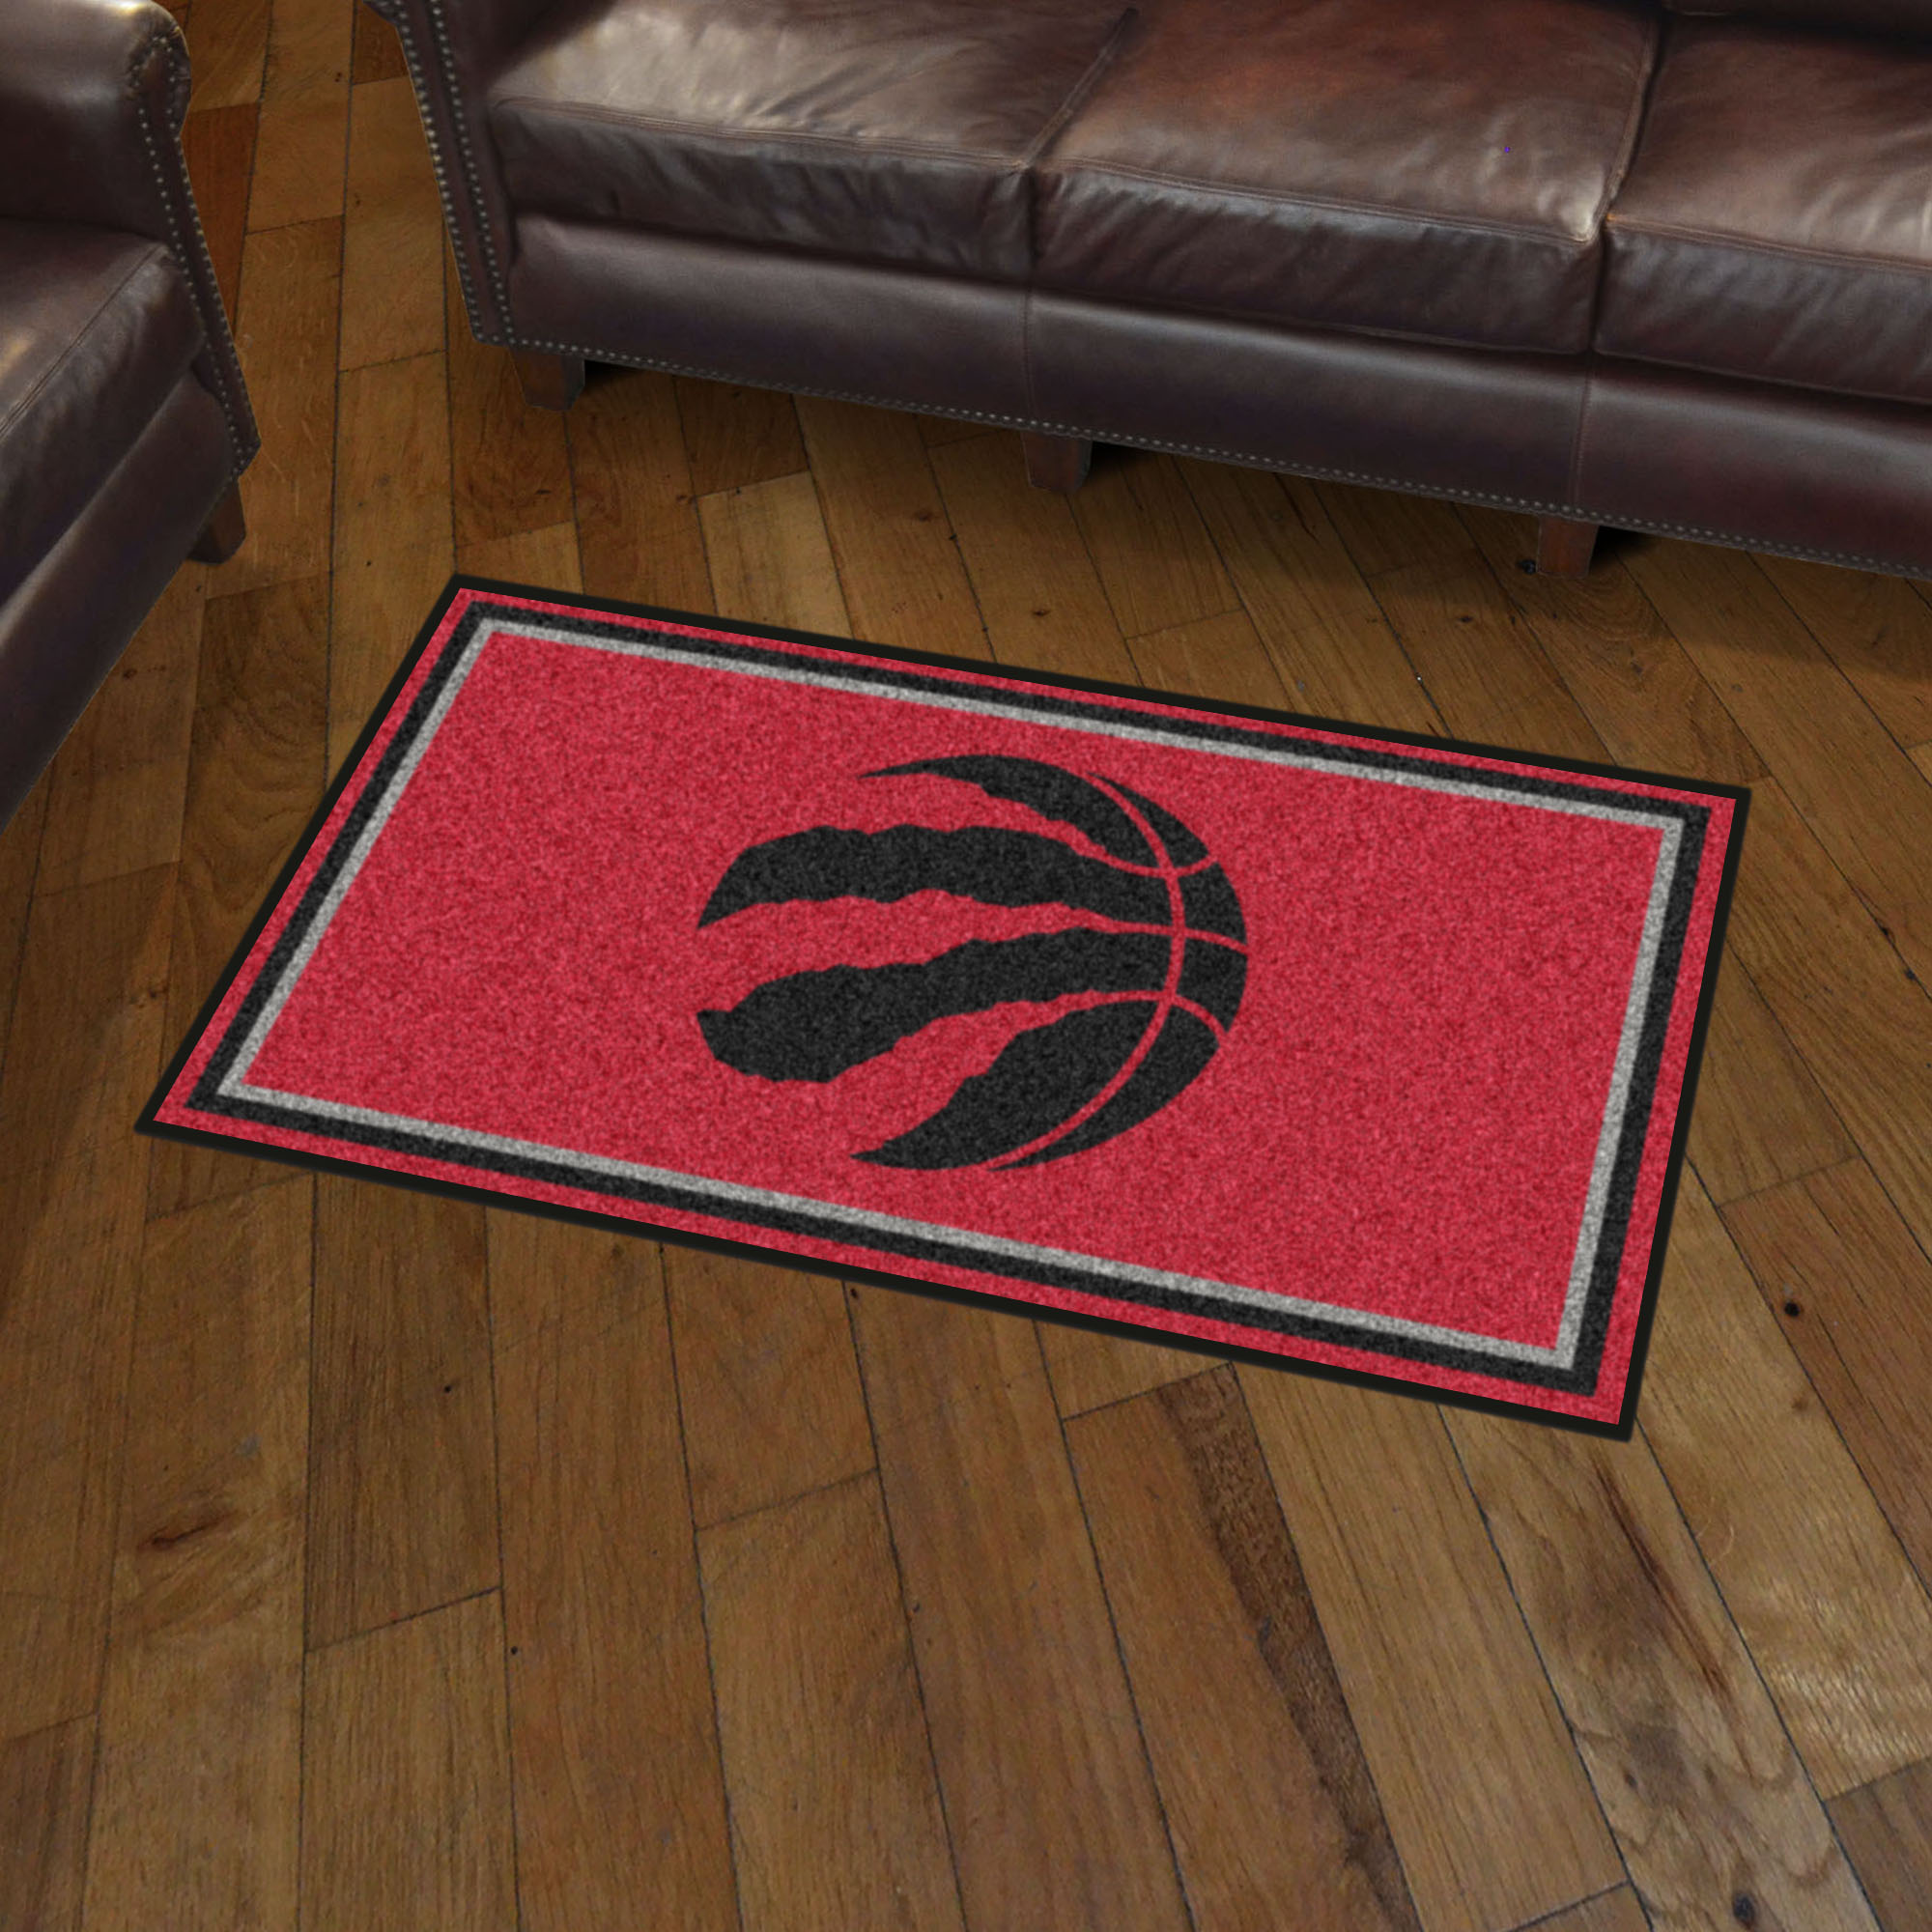 Toronto Raptors Area rug - 3â€™ x 5â€™ Nylon